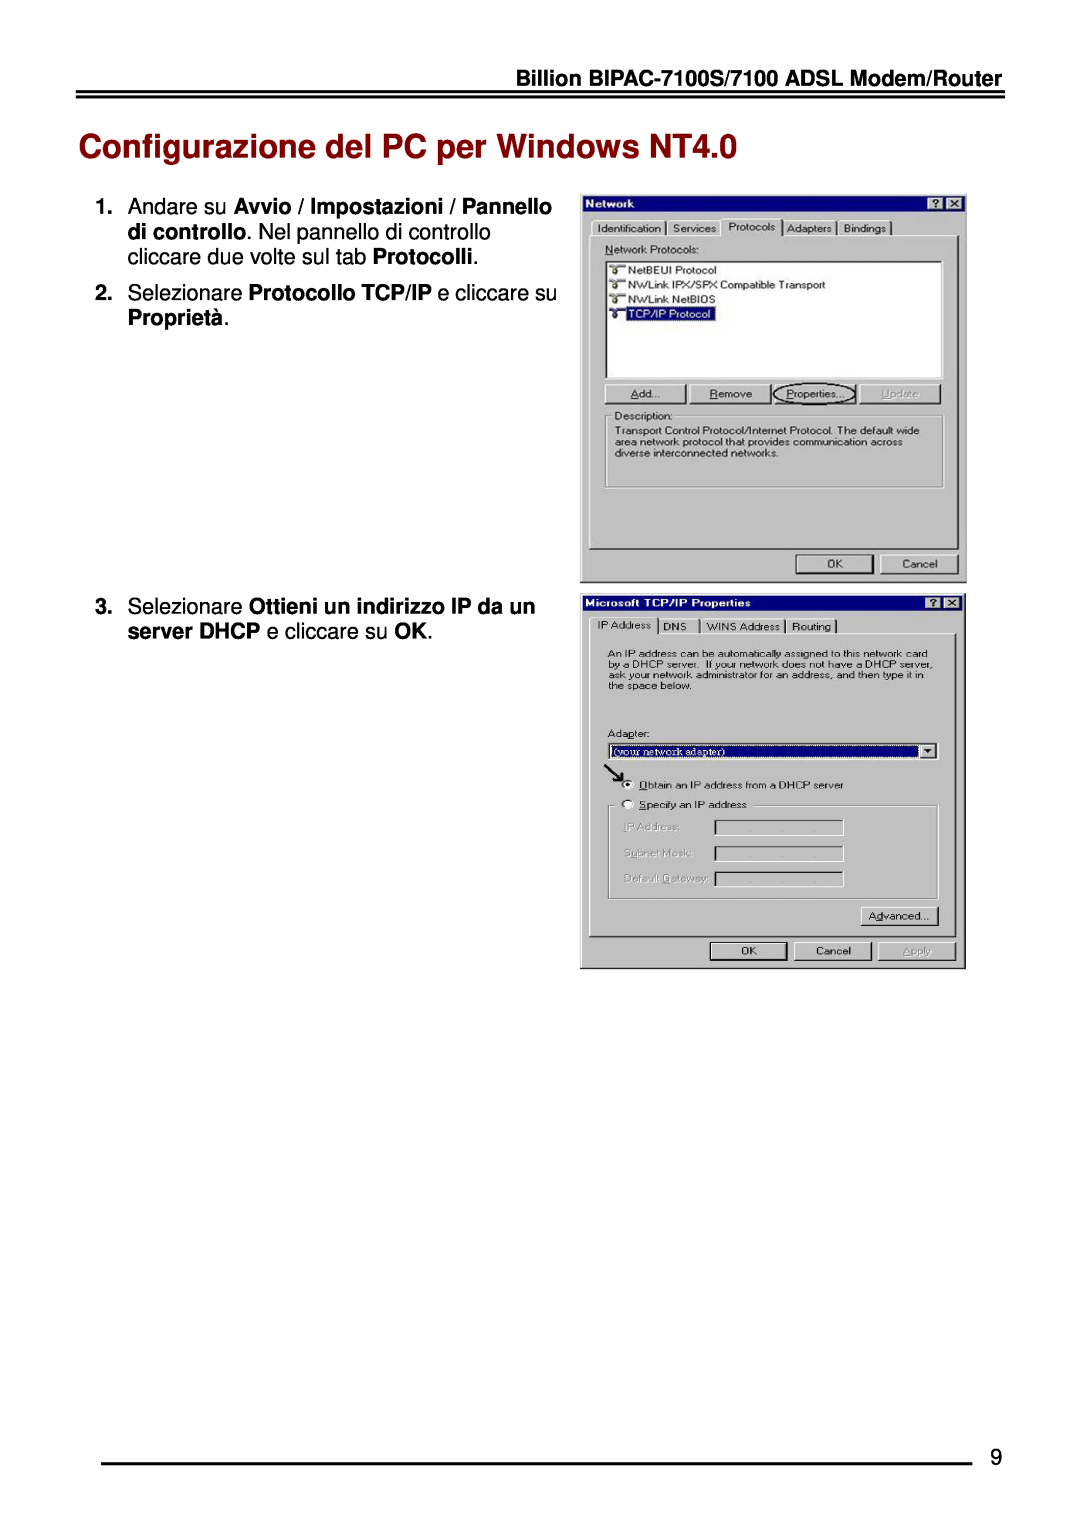 Billion Electric Company BIPAC-7100 manual Configurazione del PC per Windows NT4.0 